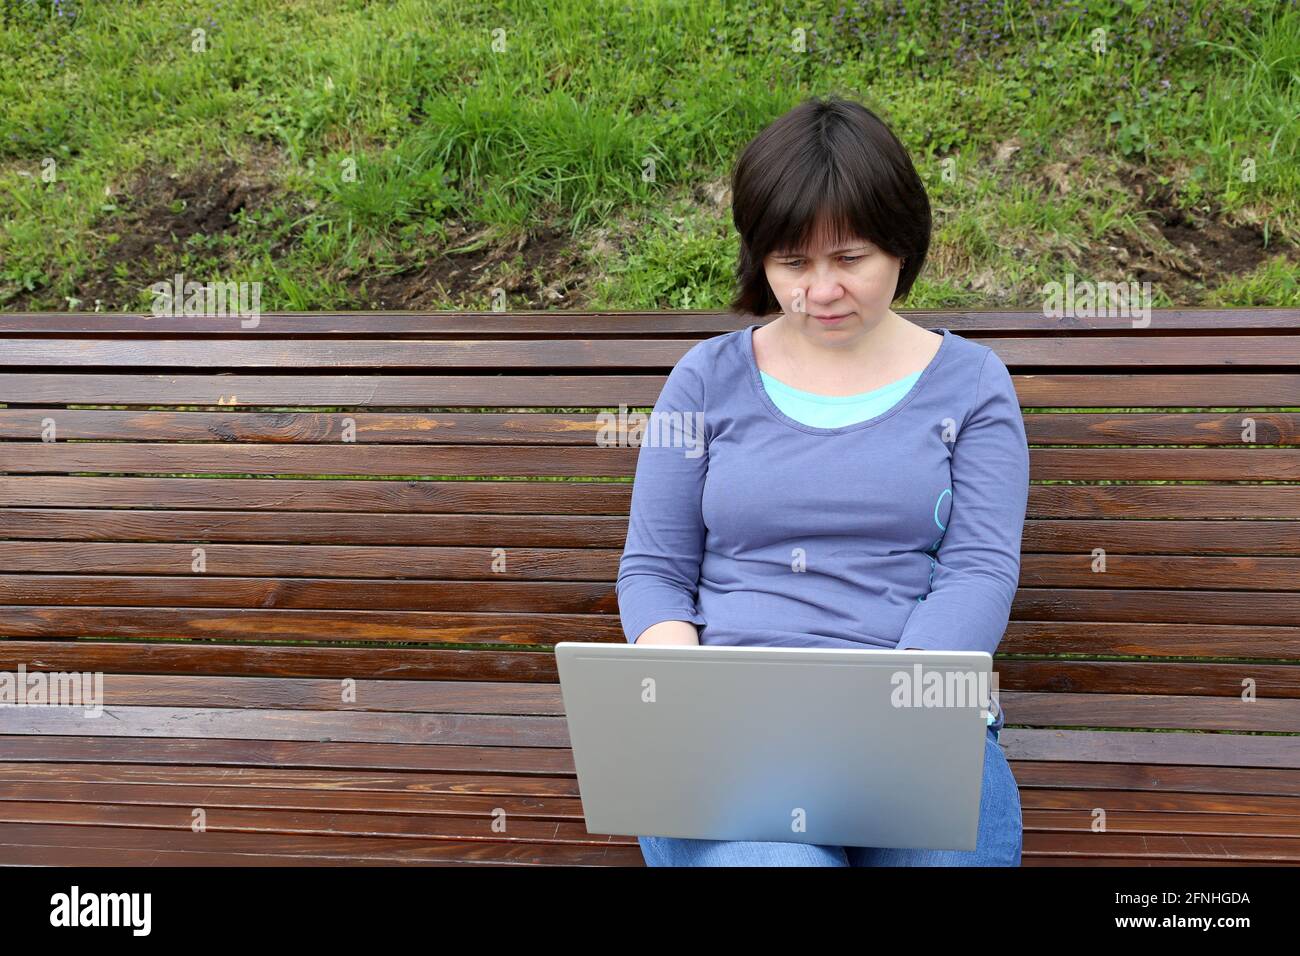 Mujer sentada con un ordenador portátil en su regazo sobre un banco de madera en el parque. Concepto de trabajo remoto al aire libre, independiente Foto de stock